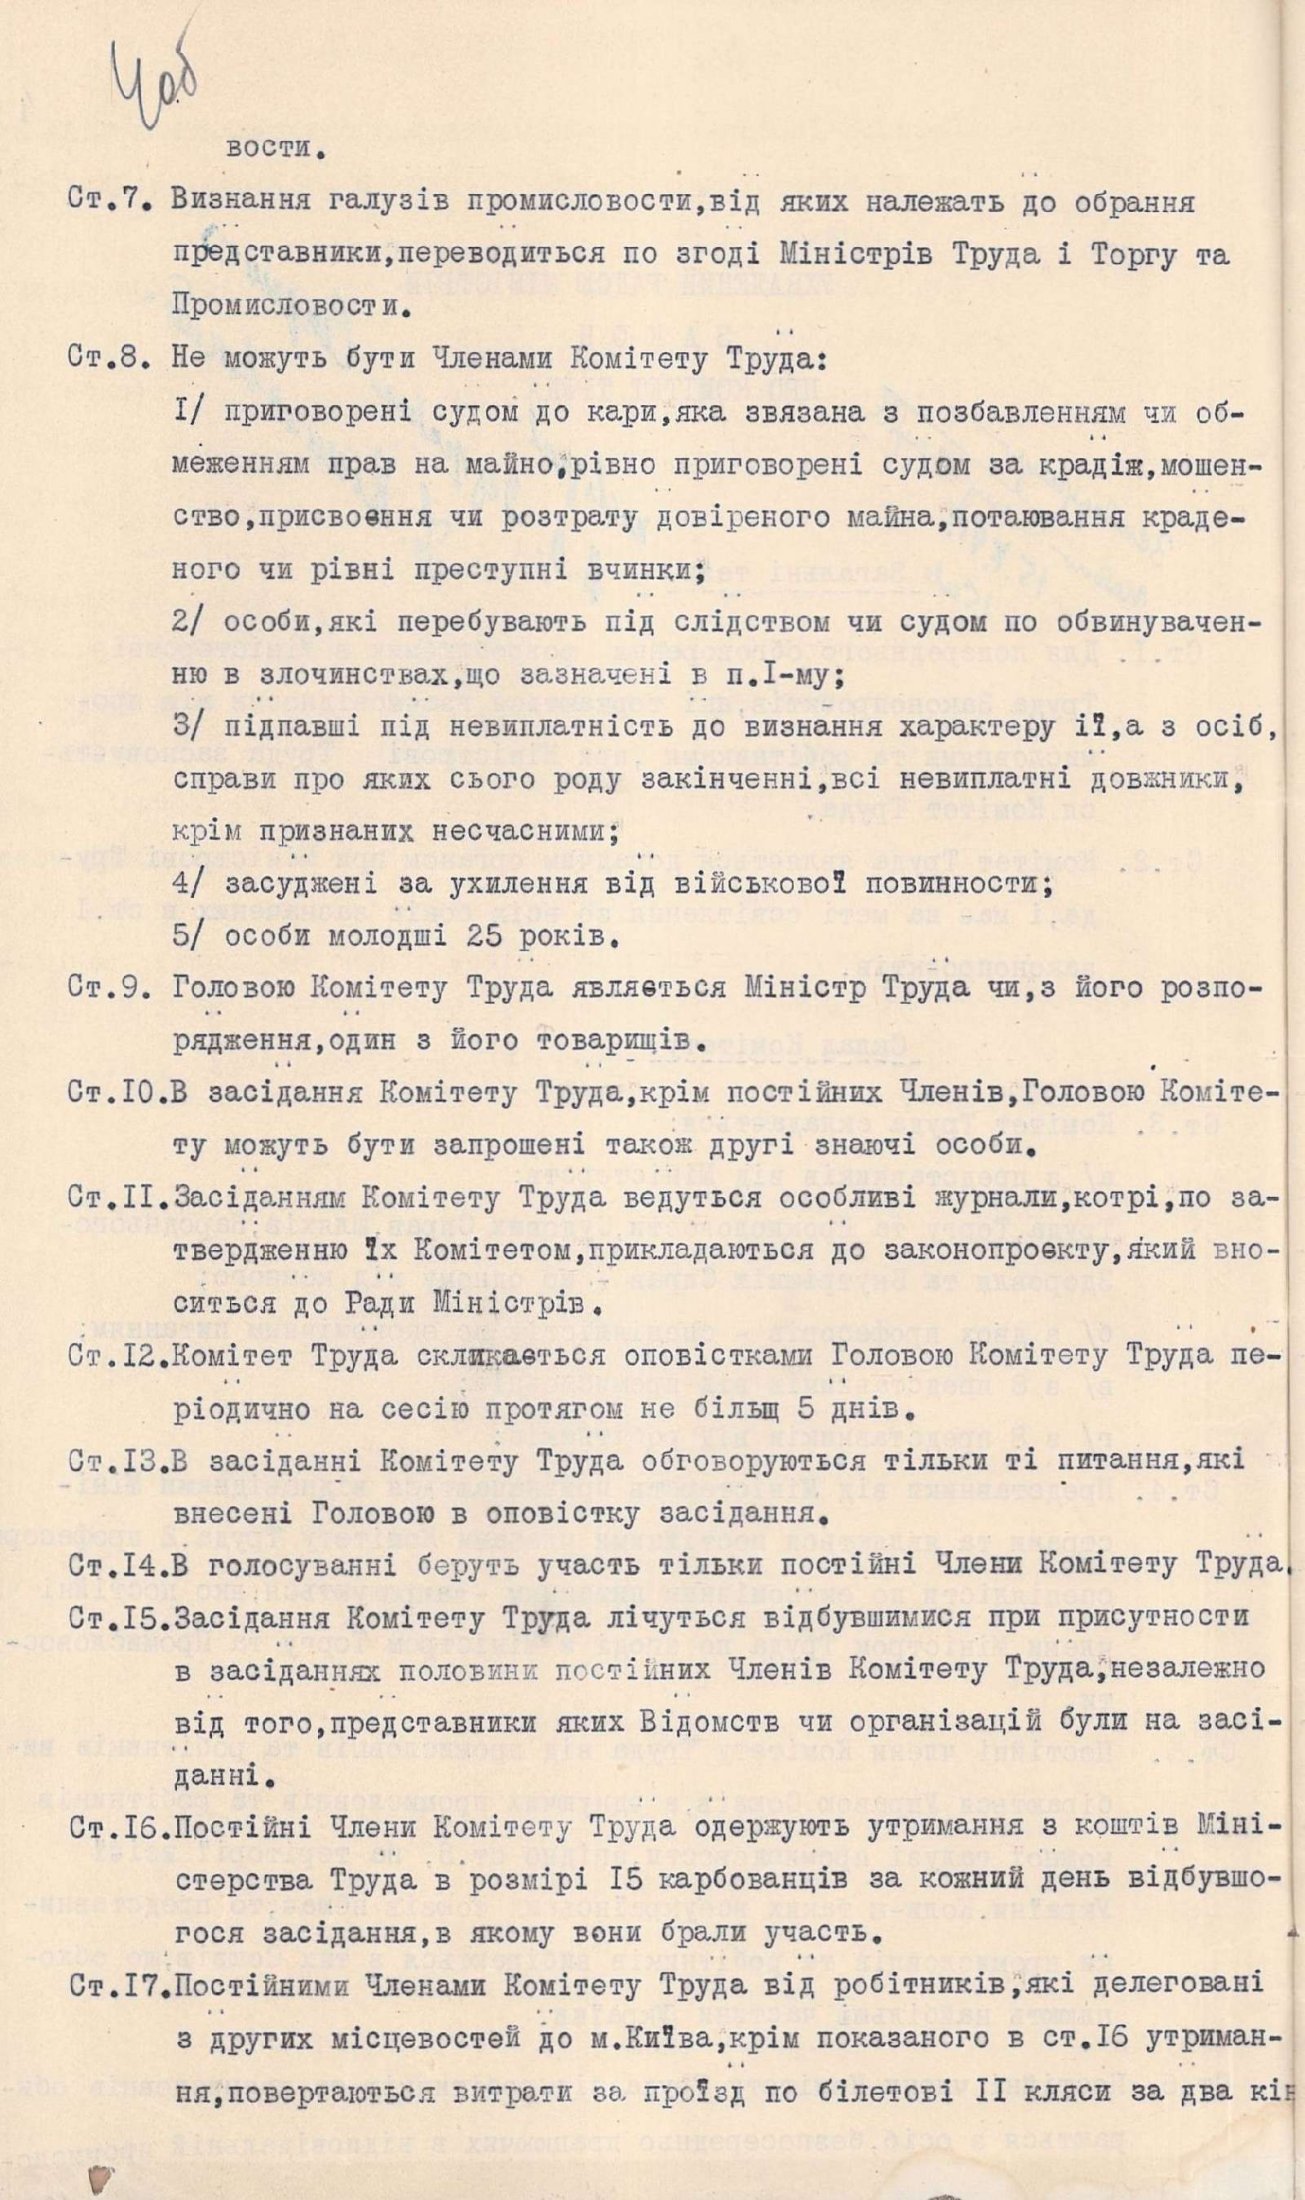 Закон Української Держави про Комітет труда. 15 липня 1918 р.